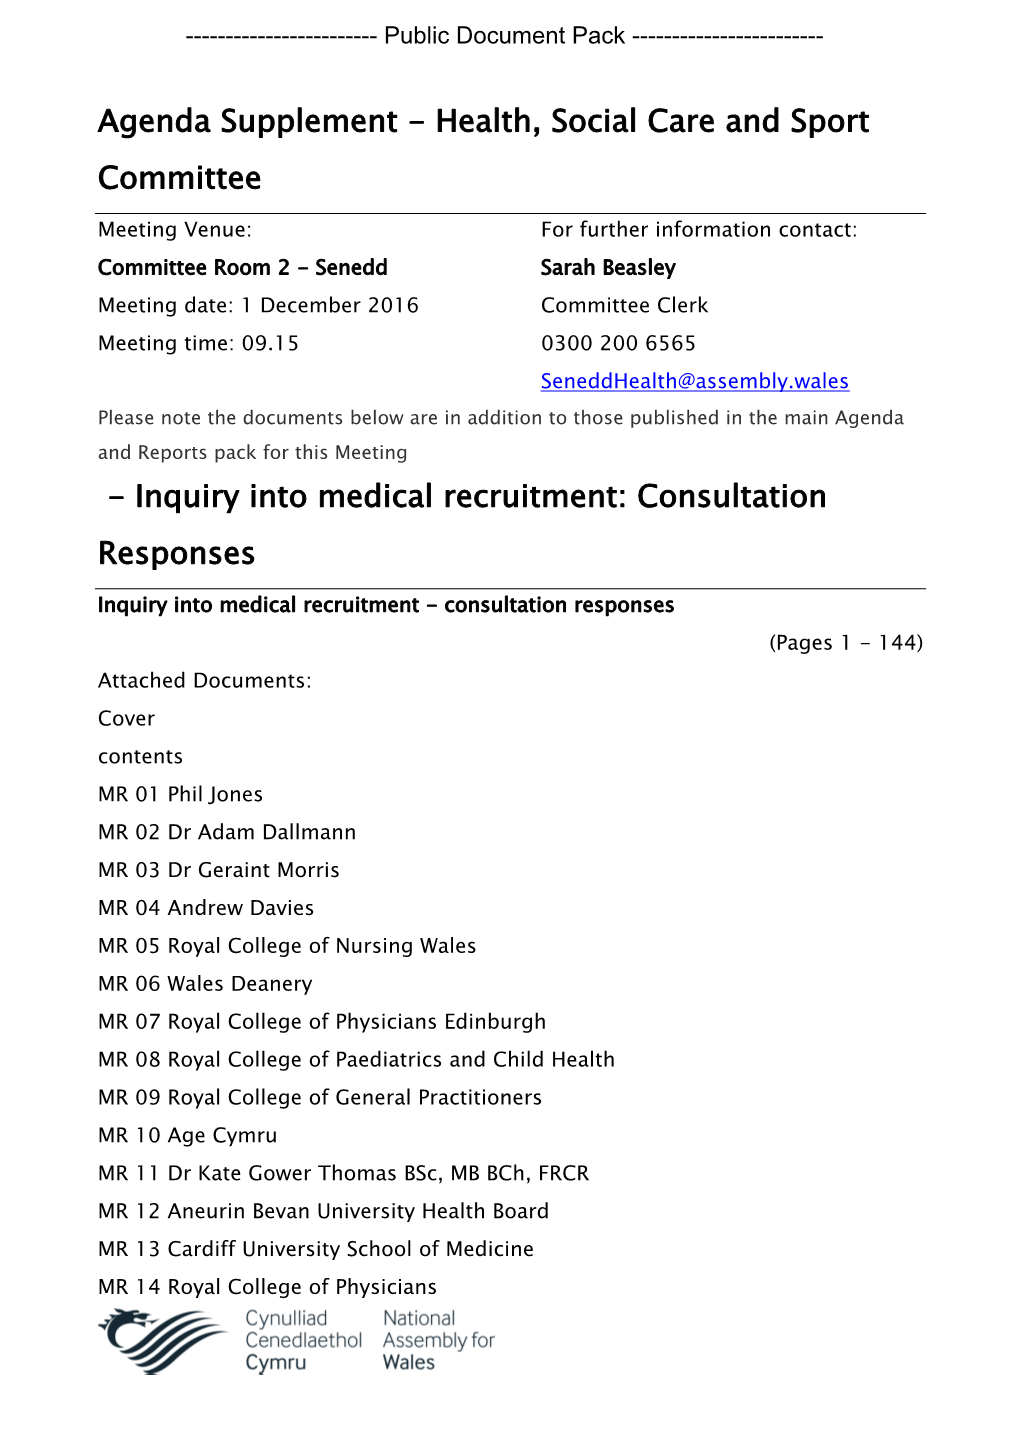 Inquiry Into Medical Recruitment: Consultation Responses